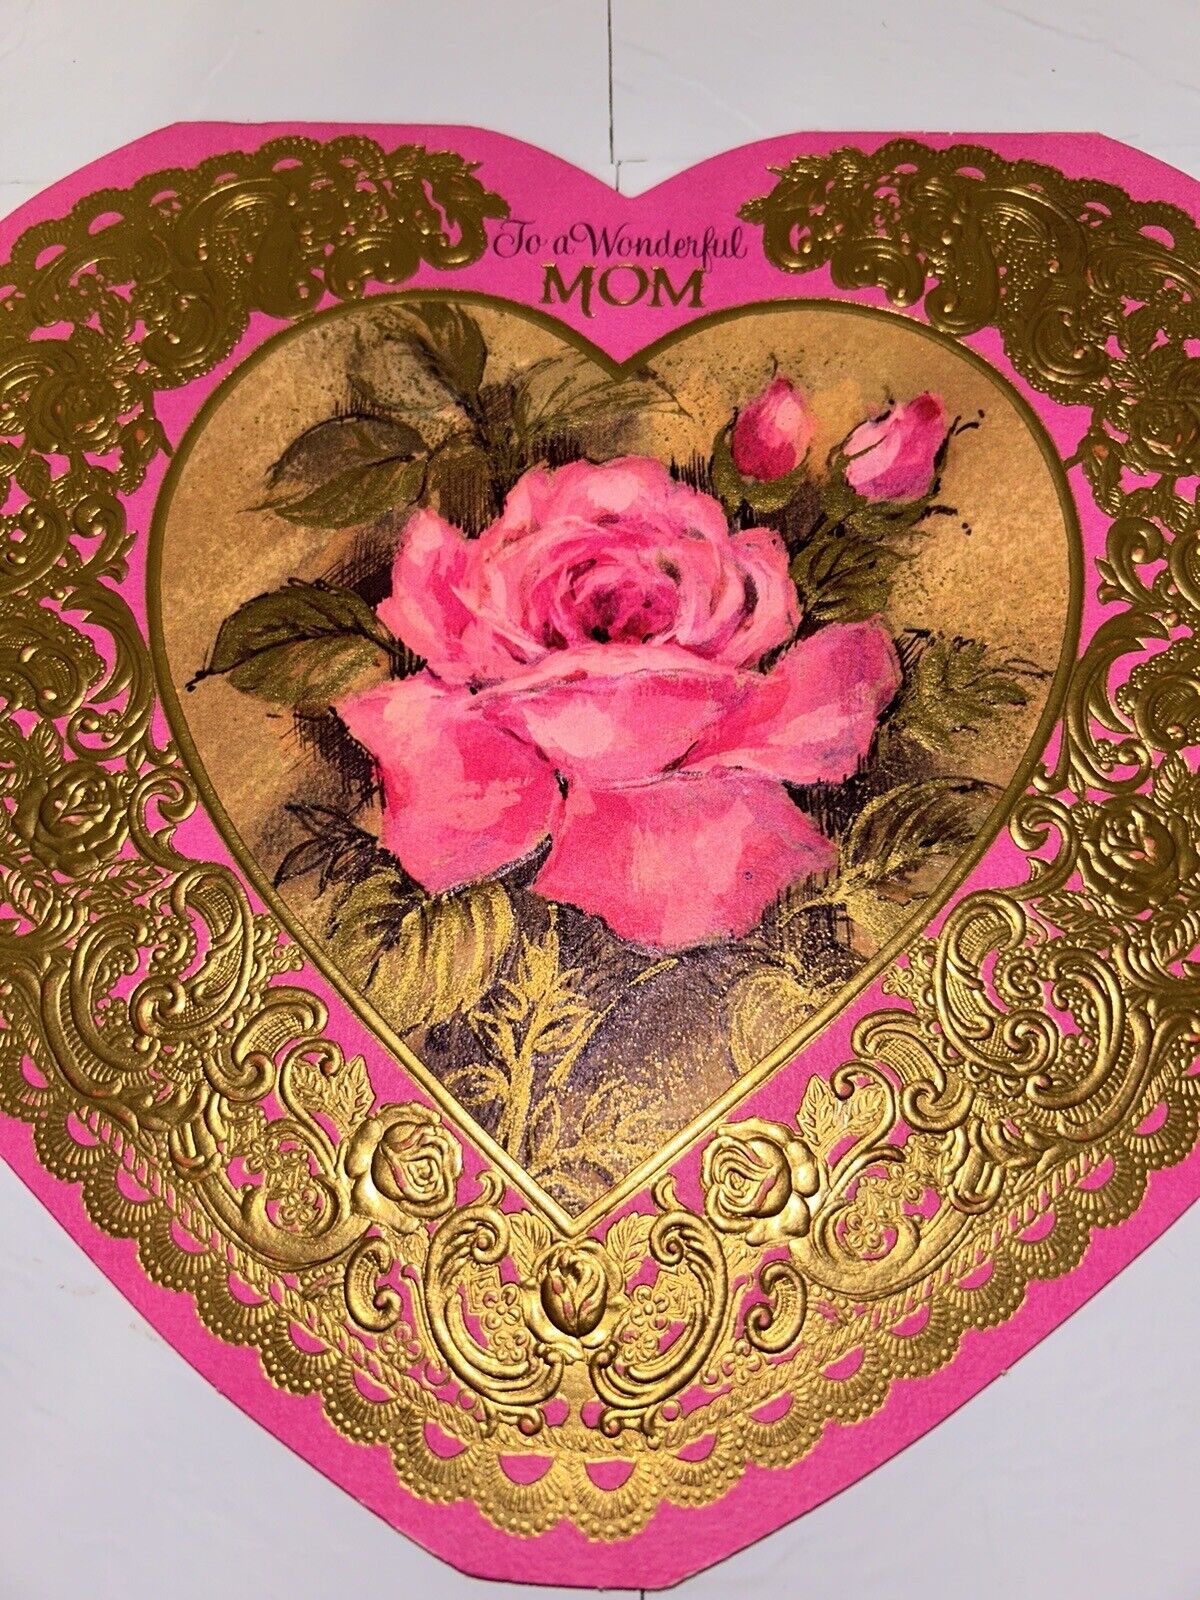 Vintage Hallmark To A Wonderful Mom Valentine’s Day Card